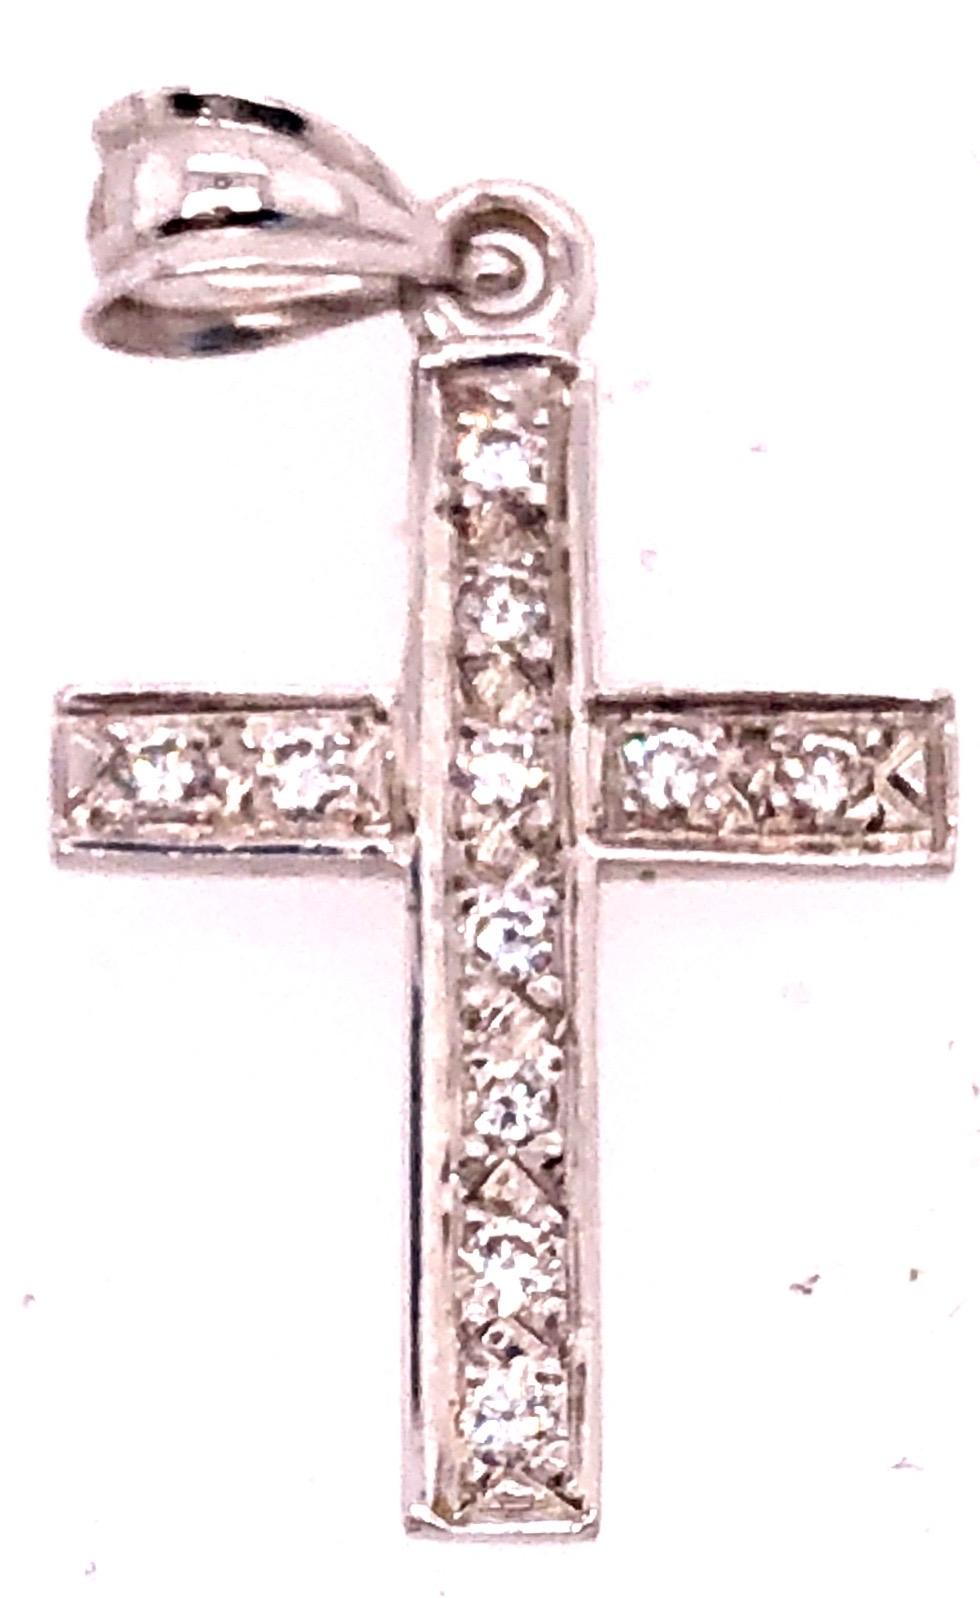 pendentif religieux / crucifix en or blanc 14 carats avec onze diamants ronds.
0.25 Poids total des diamants
5.1 gramme de poids total.
28.hauteur de 99 mm.